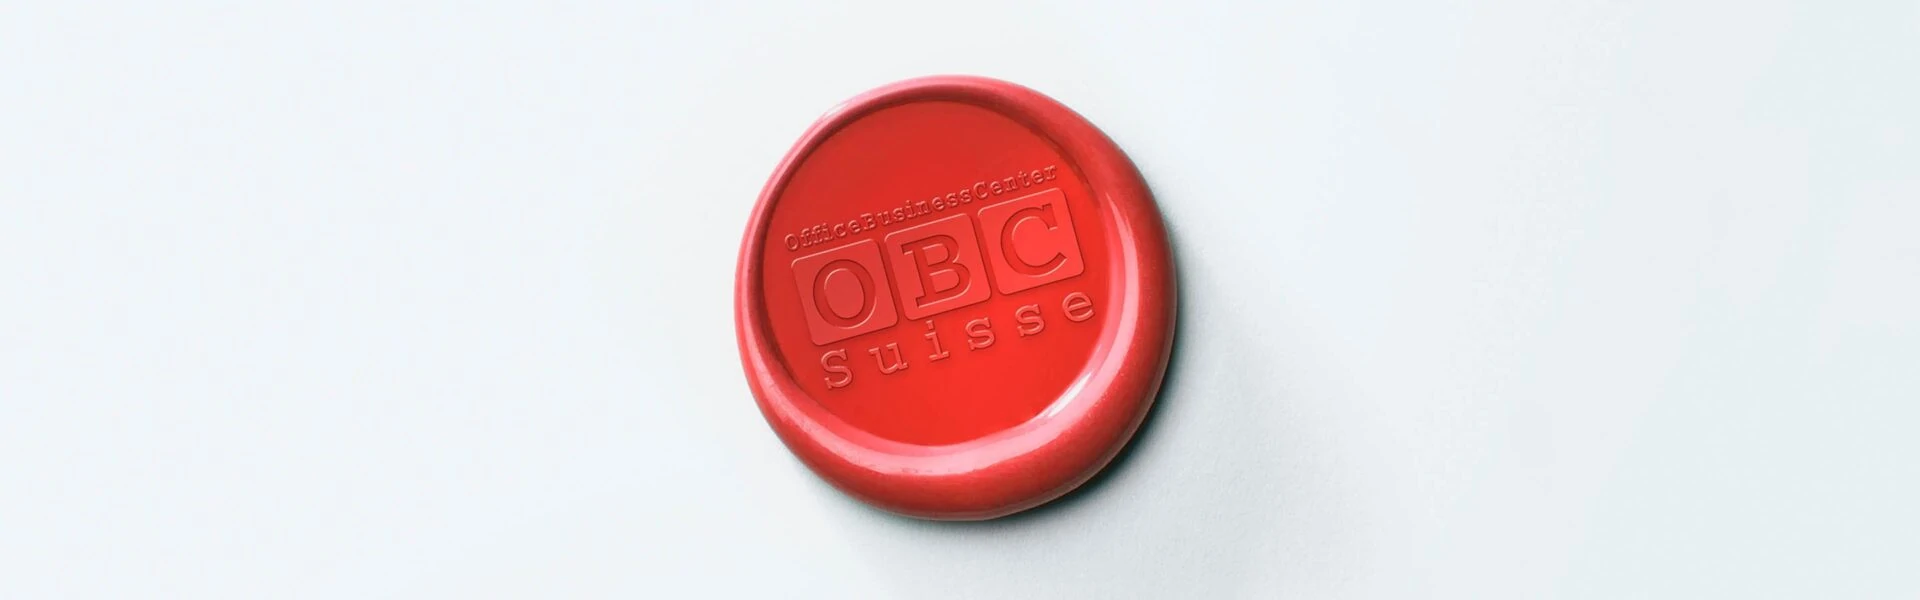 OBC Suisse